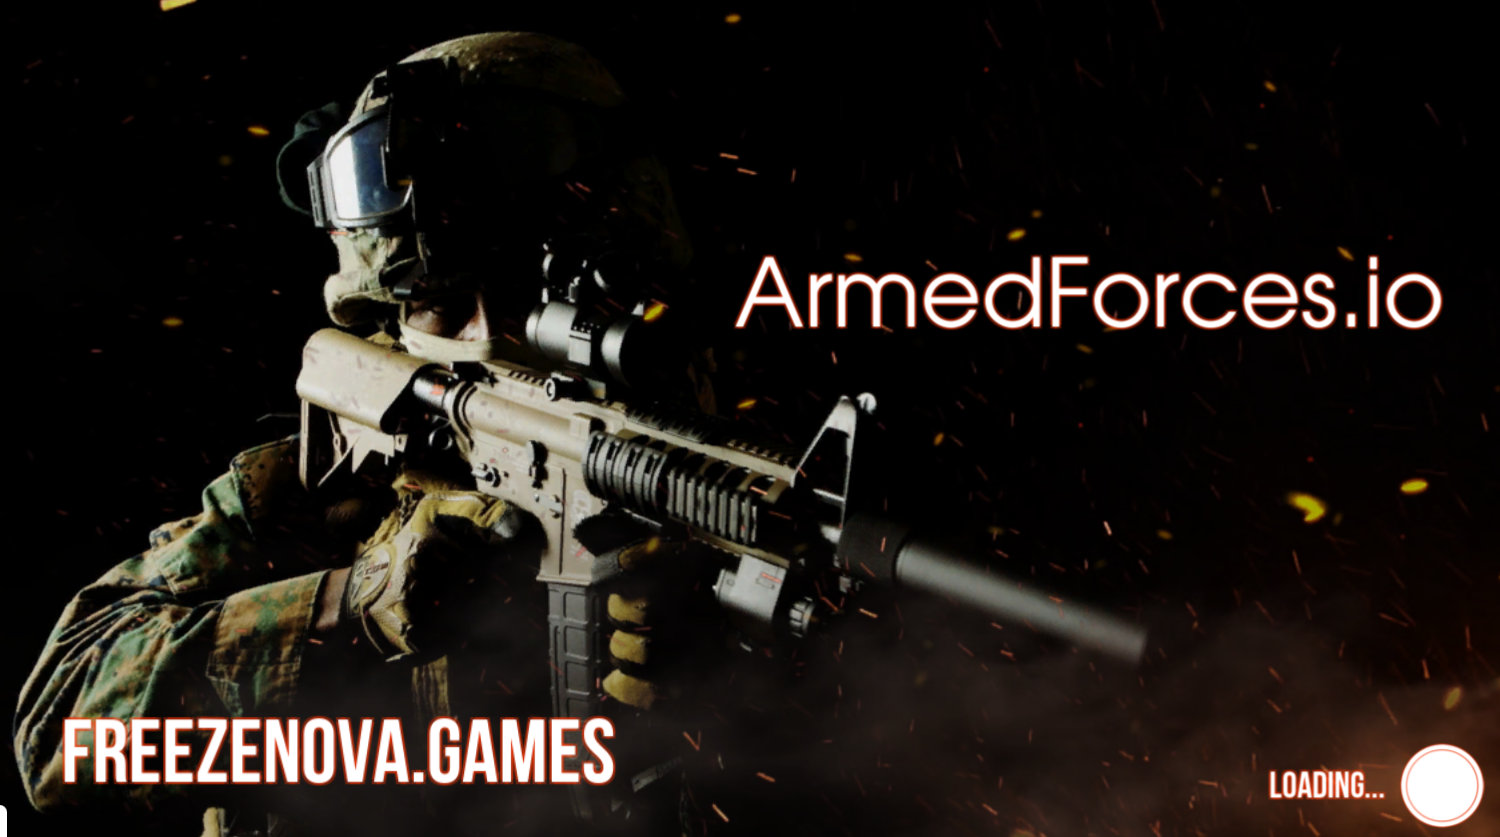 Freezenova: Armed Forces II